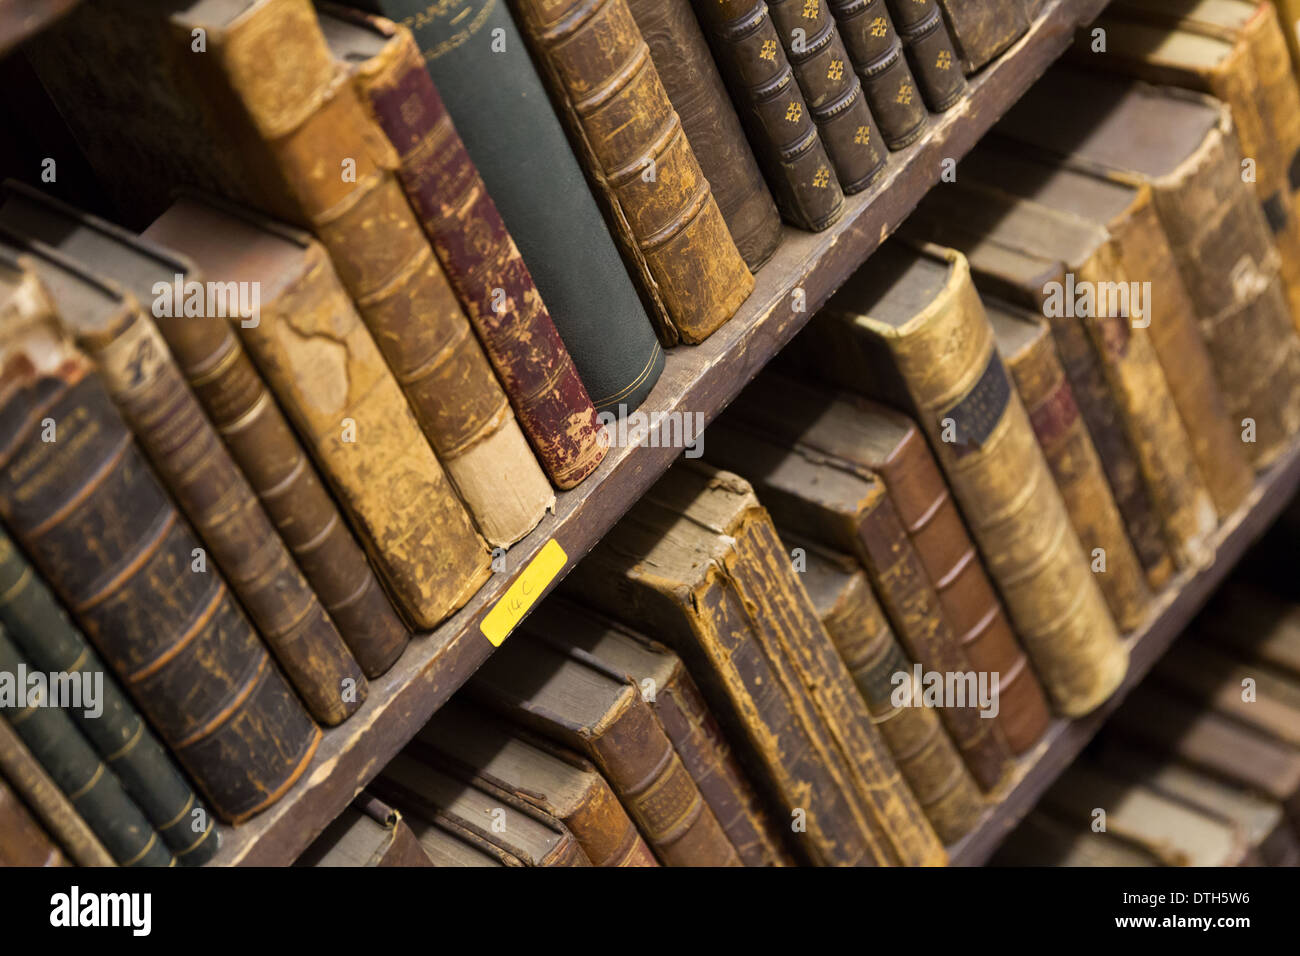 Books on shelves Stock Photo